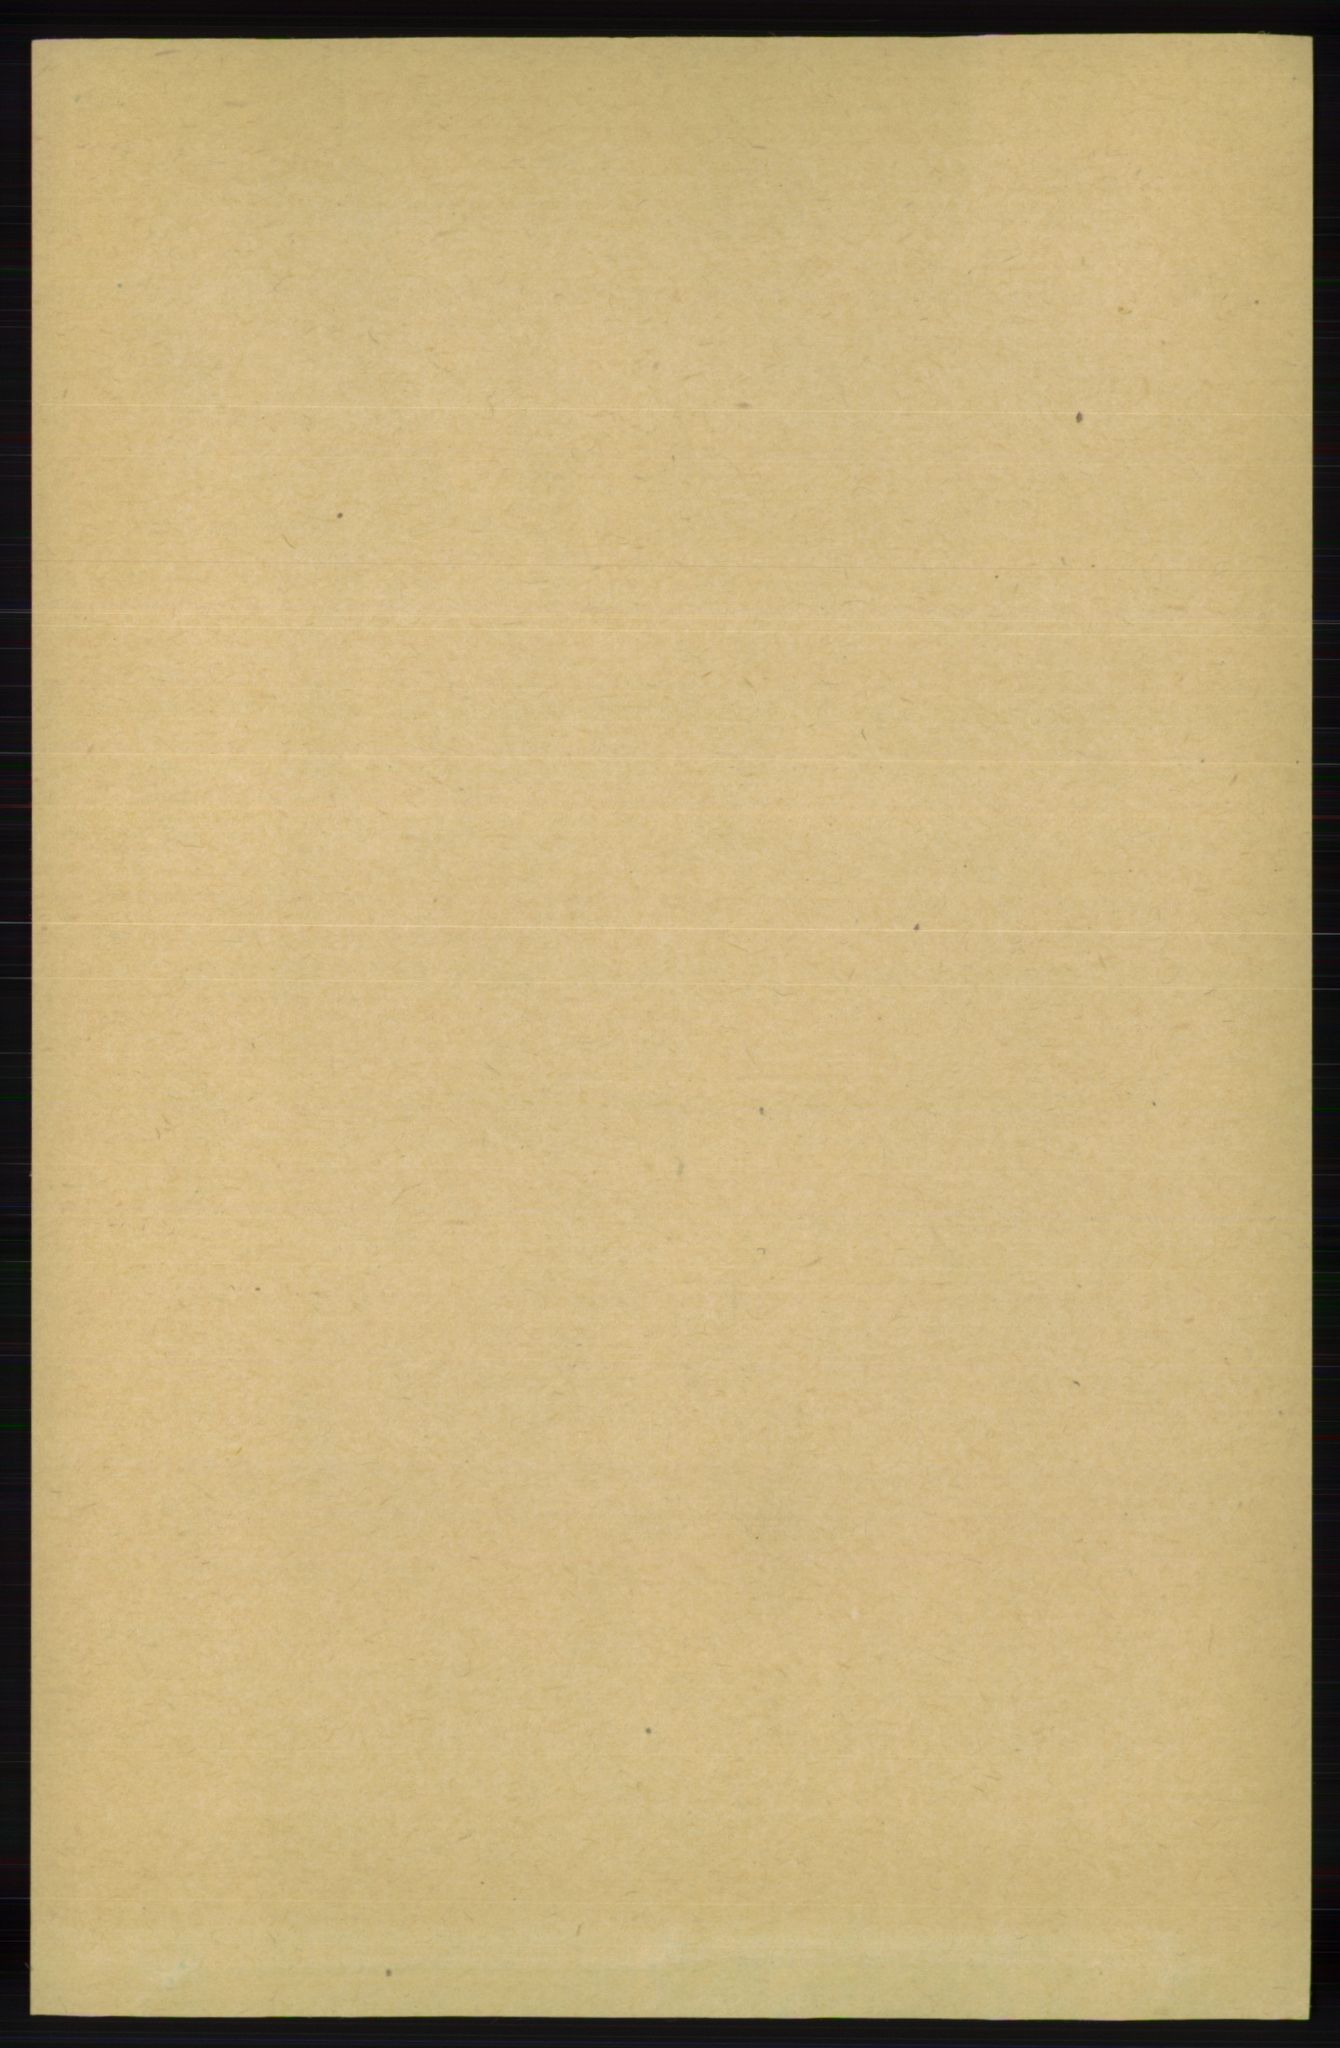 RA, Folketelling 1891 for 1039 Herad herred, 1891, s. 981